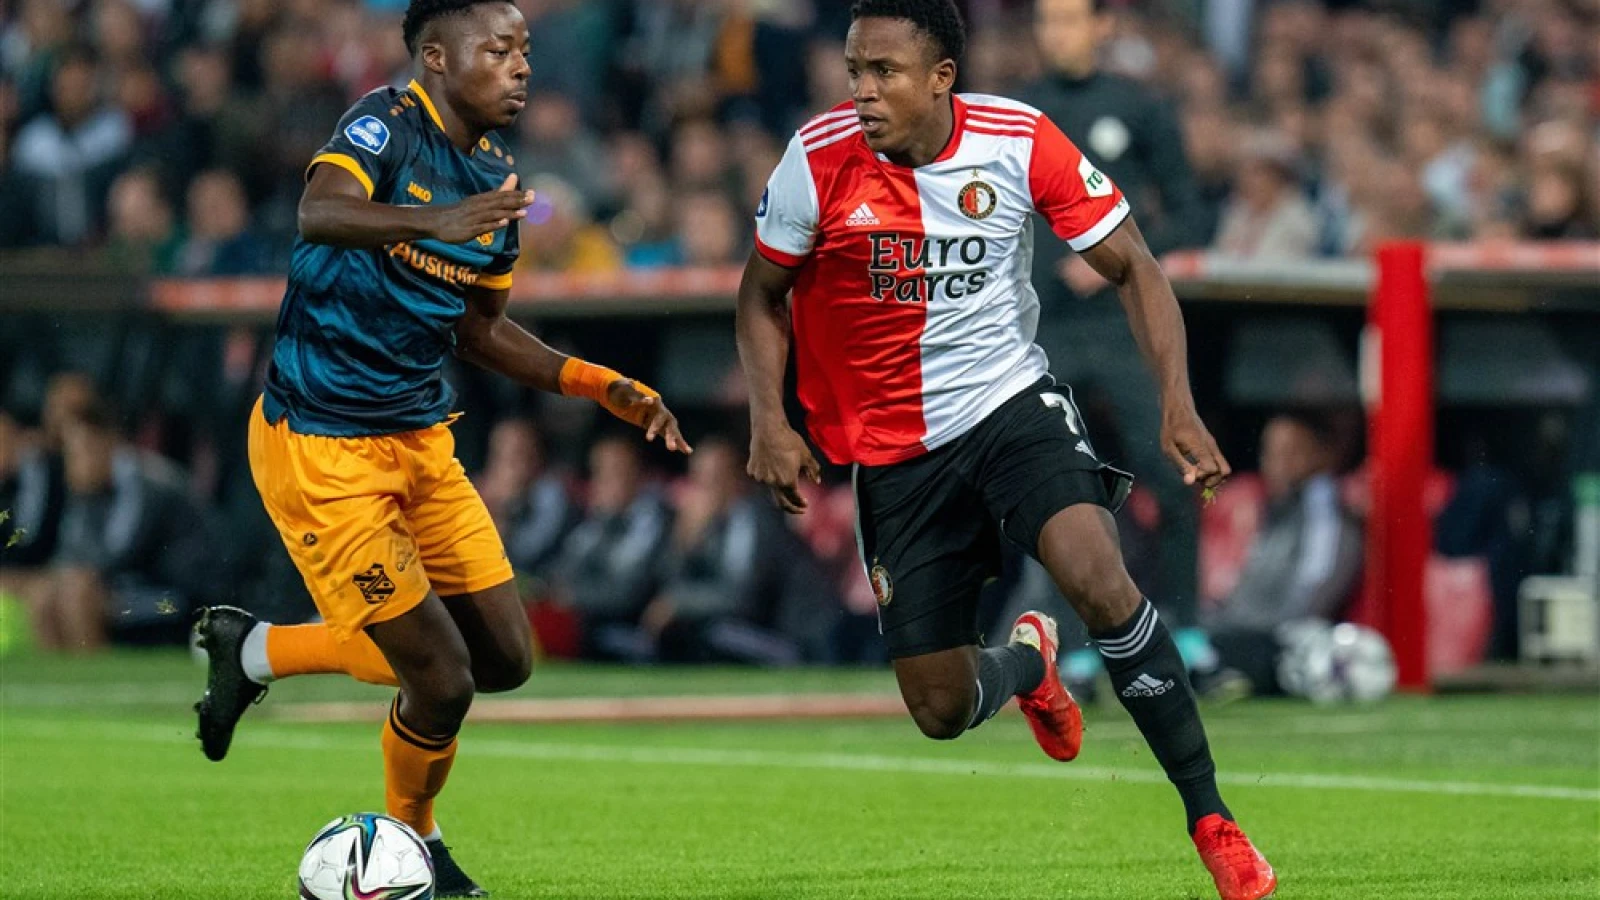 LIVE | Feyenoord - sc Heerenveen 3-1 | Einde wedstrijd